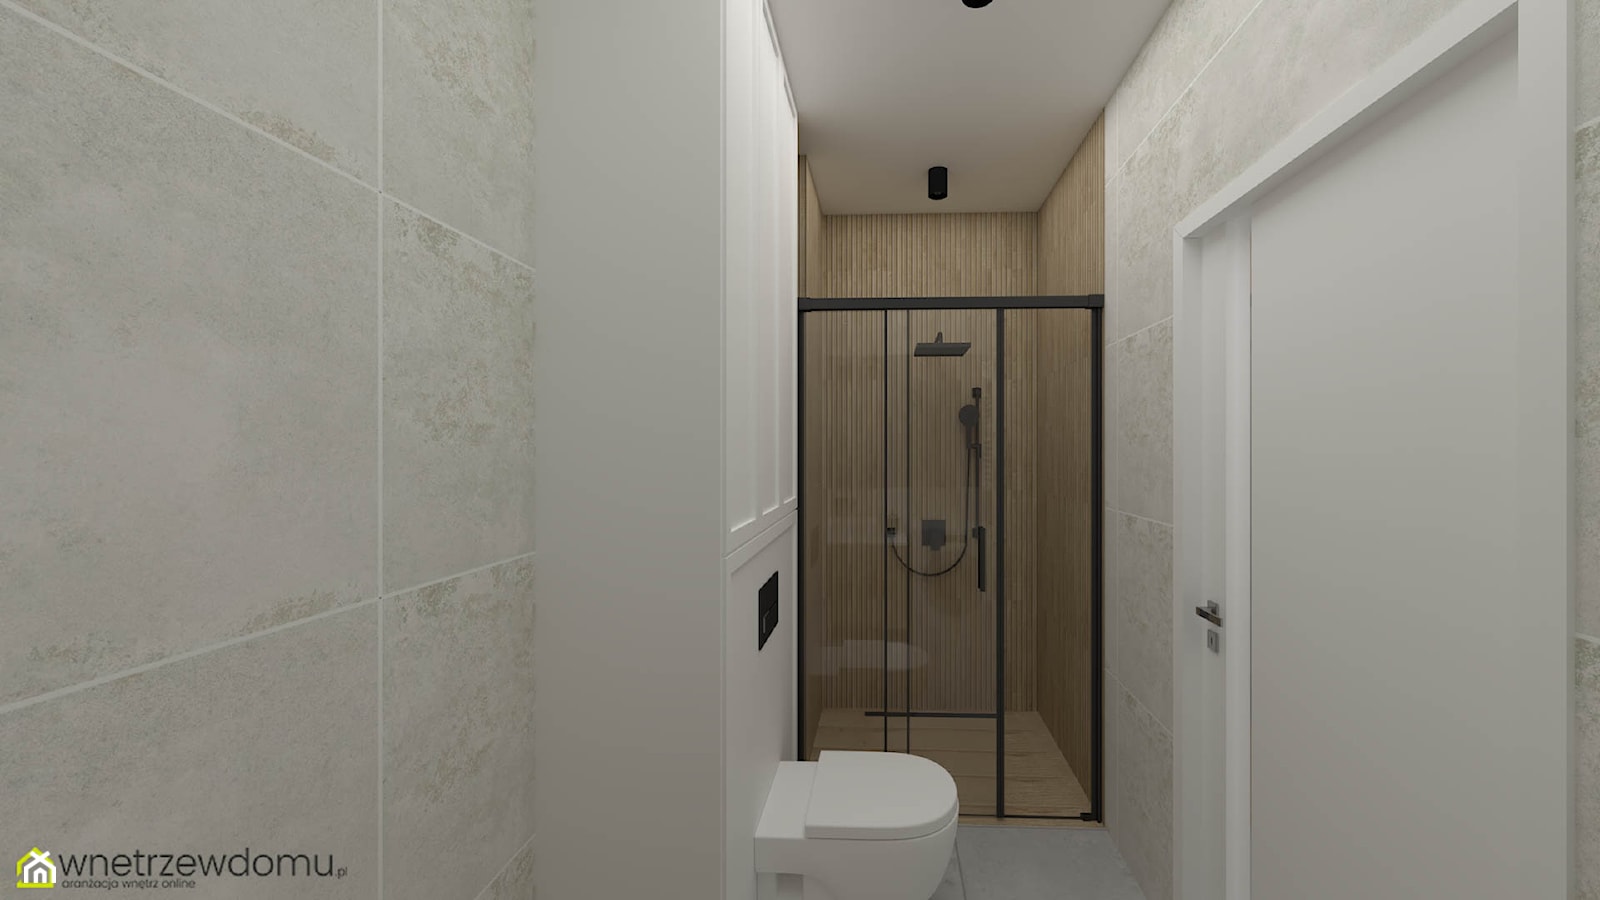 Połączenie bieli i drewna w łazience - zdjęcie od wnetrzewdomu - Homebook